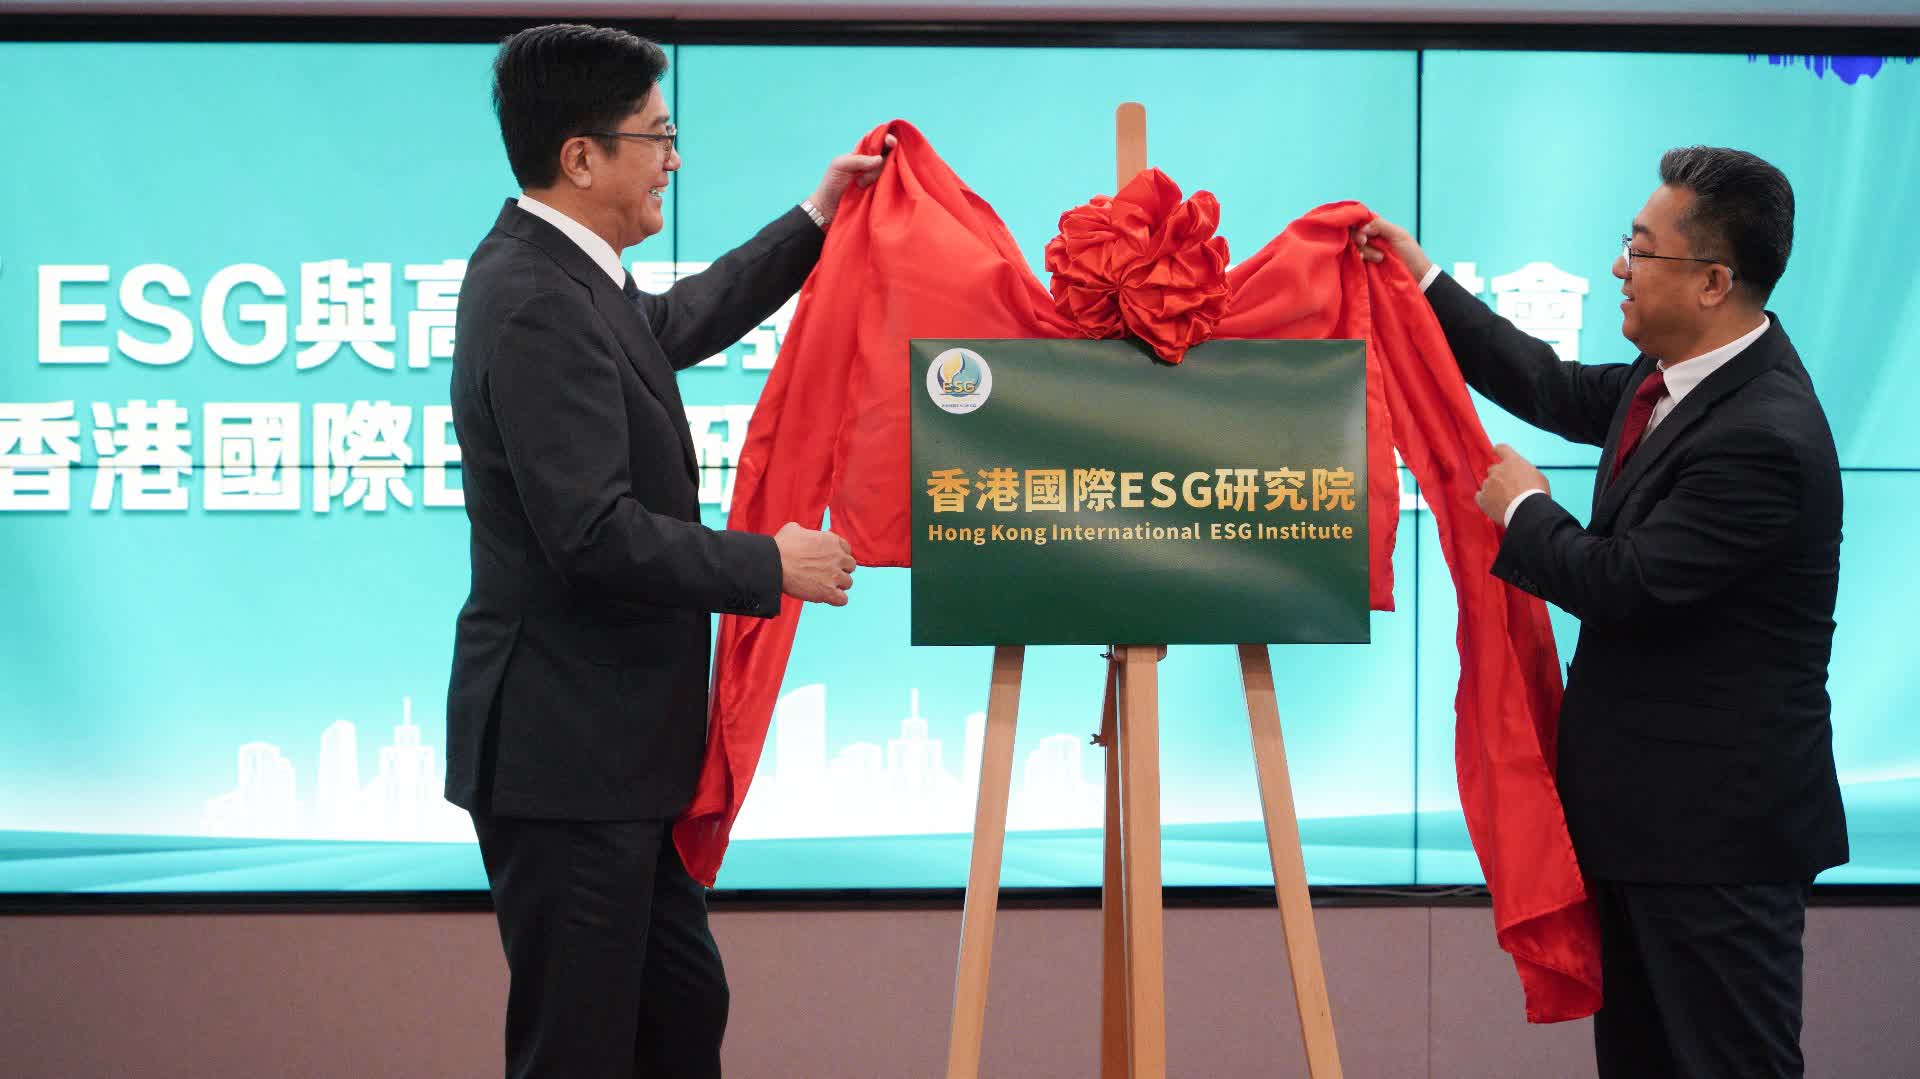 （多圖）香港國際ESG研究院在大文集團揭牌